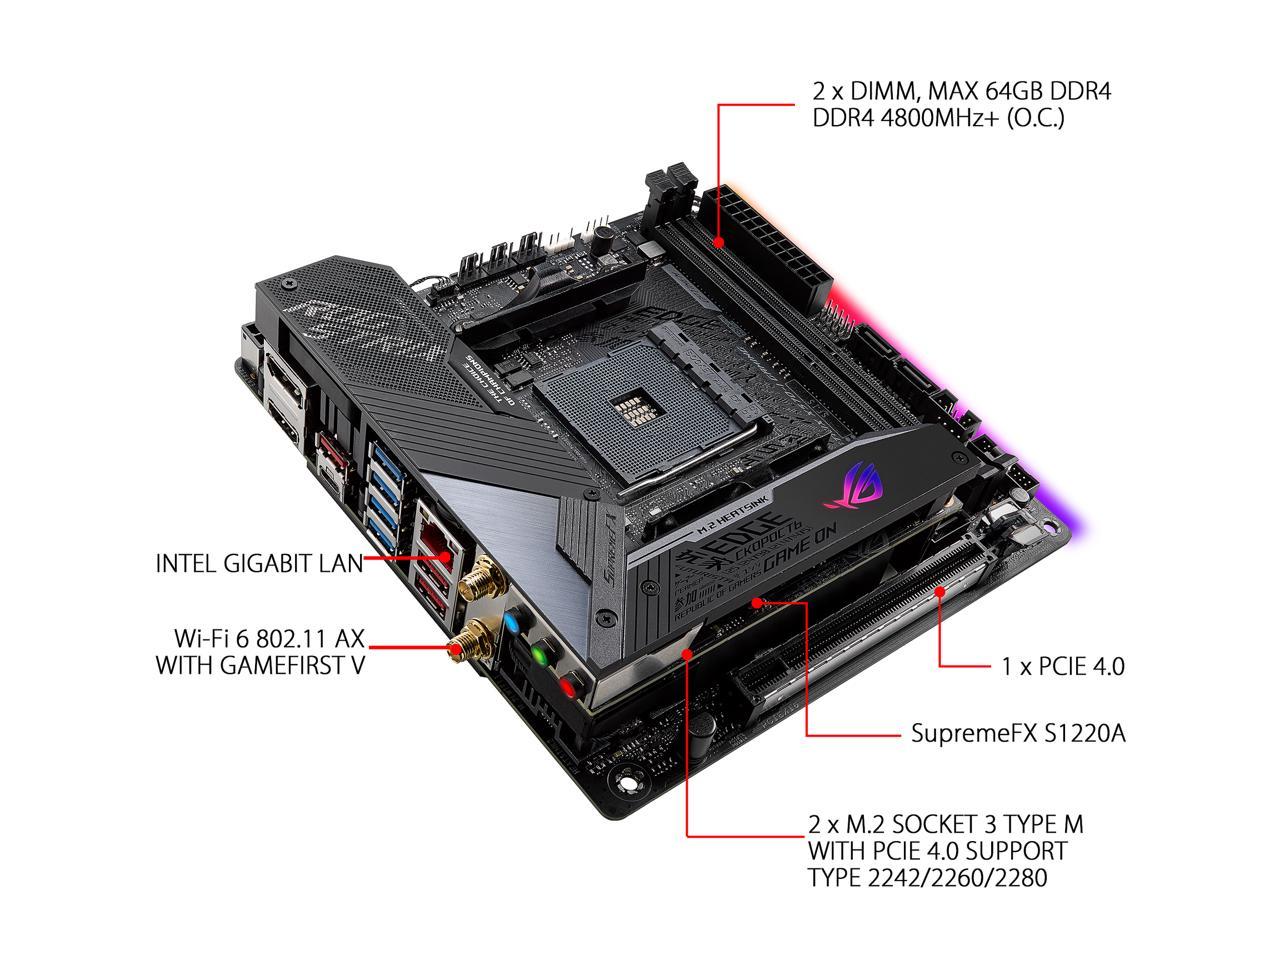 ASUS ROG Strix X570-I Gaming AM4 AMD X570 SATA 6Gb/s Mini ITX AMD